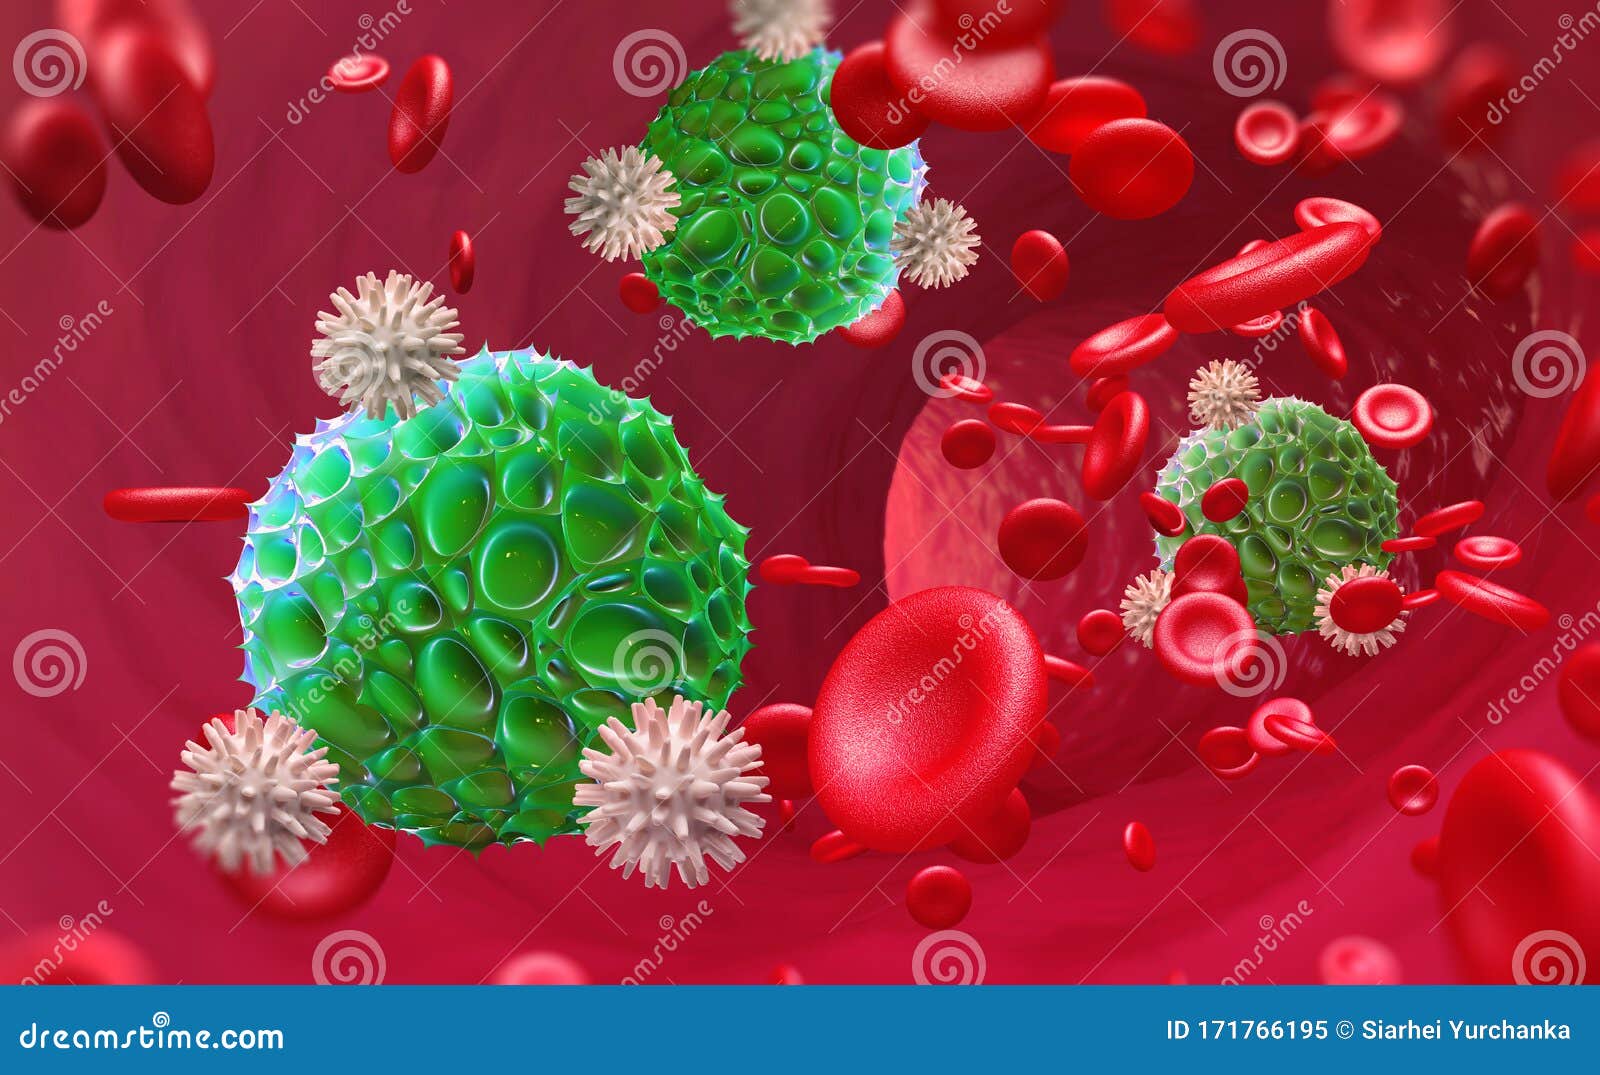 viruses in blood. danger of epidemic. leukocytes attack virus. immunity of body